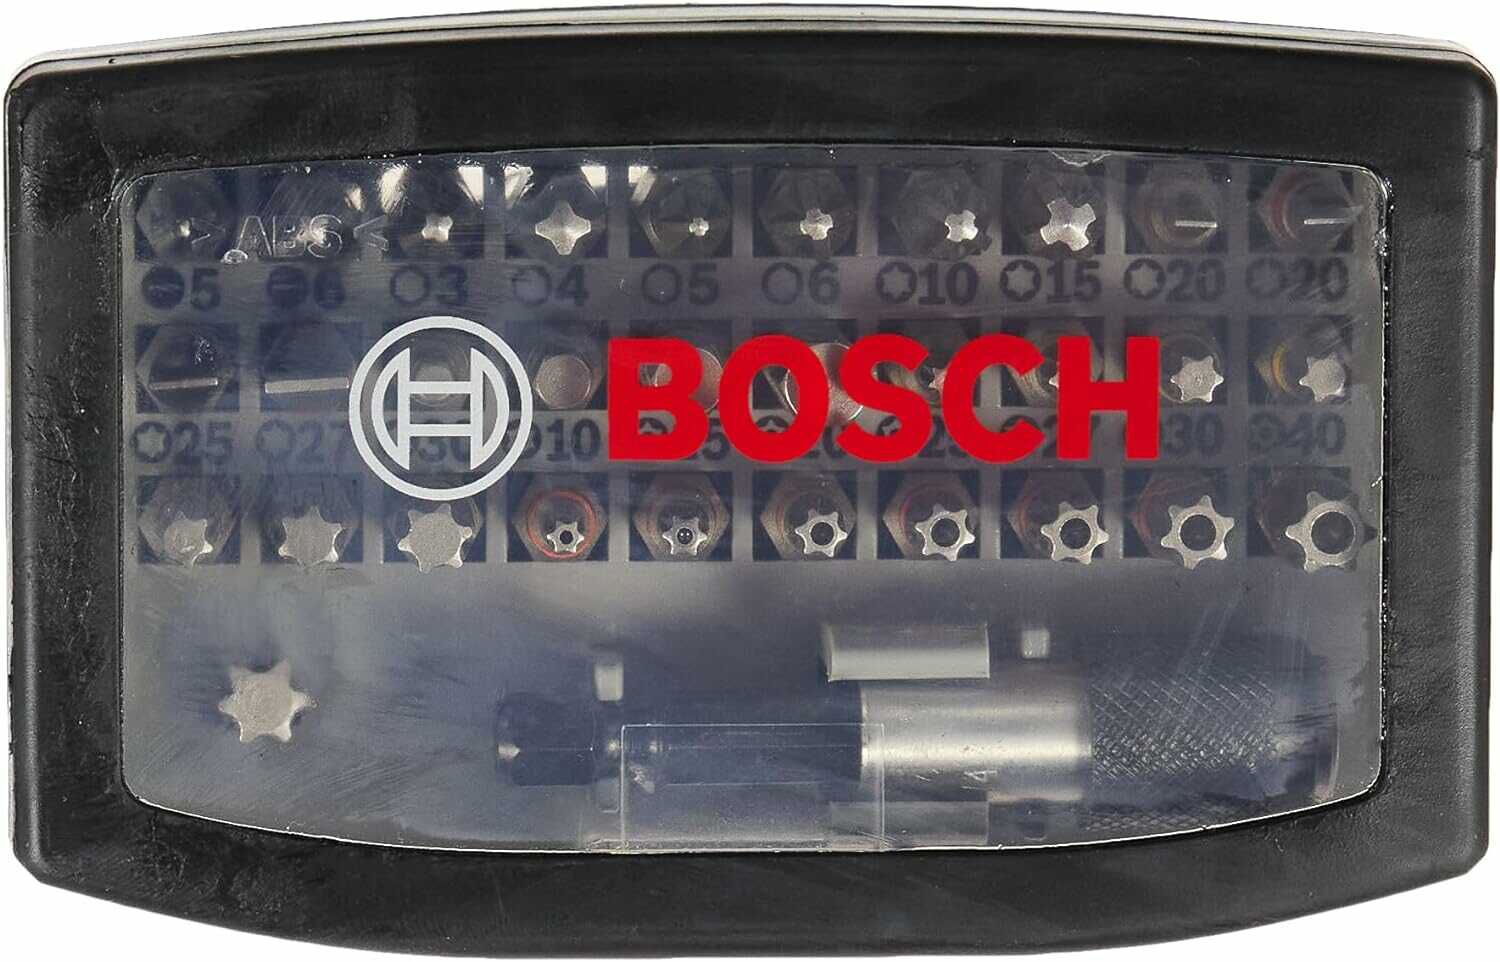 Bosch Professional Schrauberbit Satz 32 teilig für 8,29€ statt 12,52€